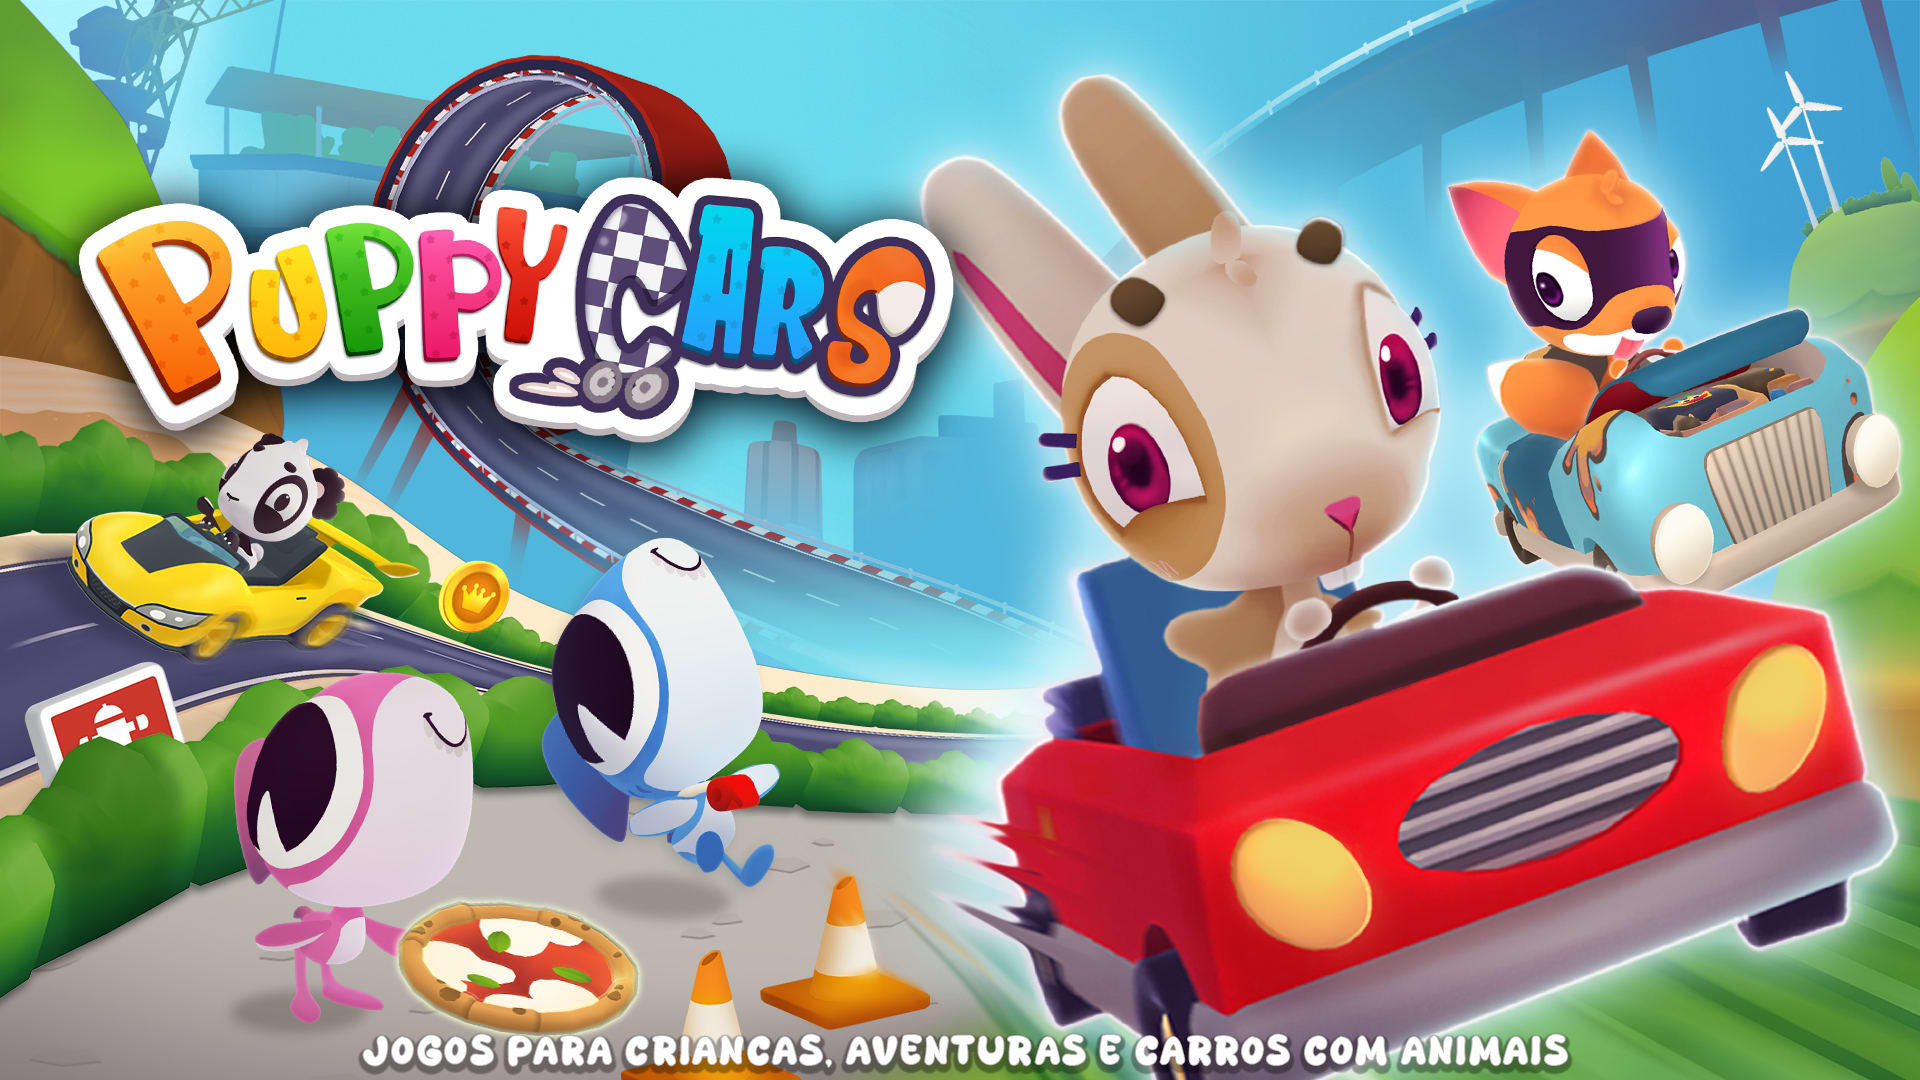 Puppy Cars: Jogos para Crianças, Aventuras e carros com Animais